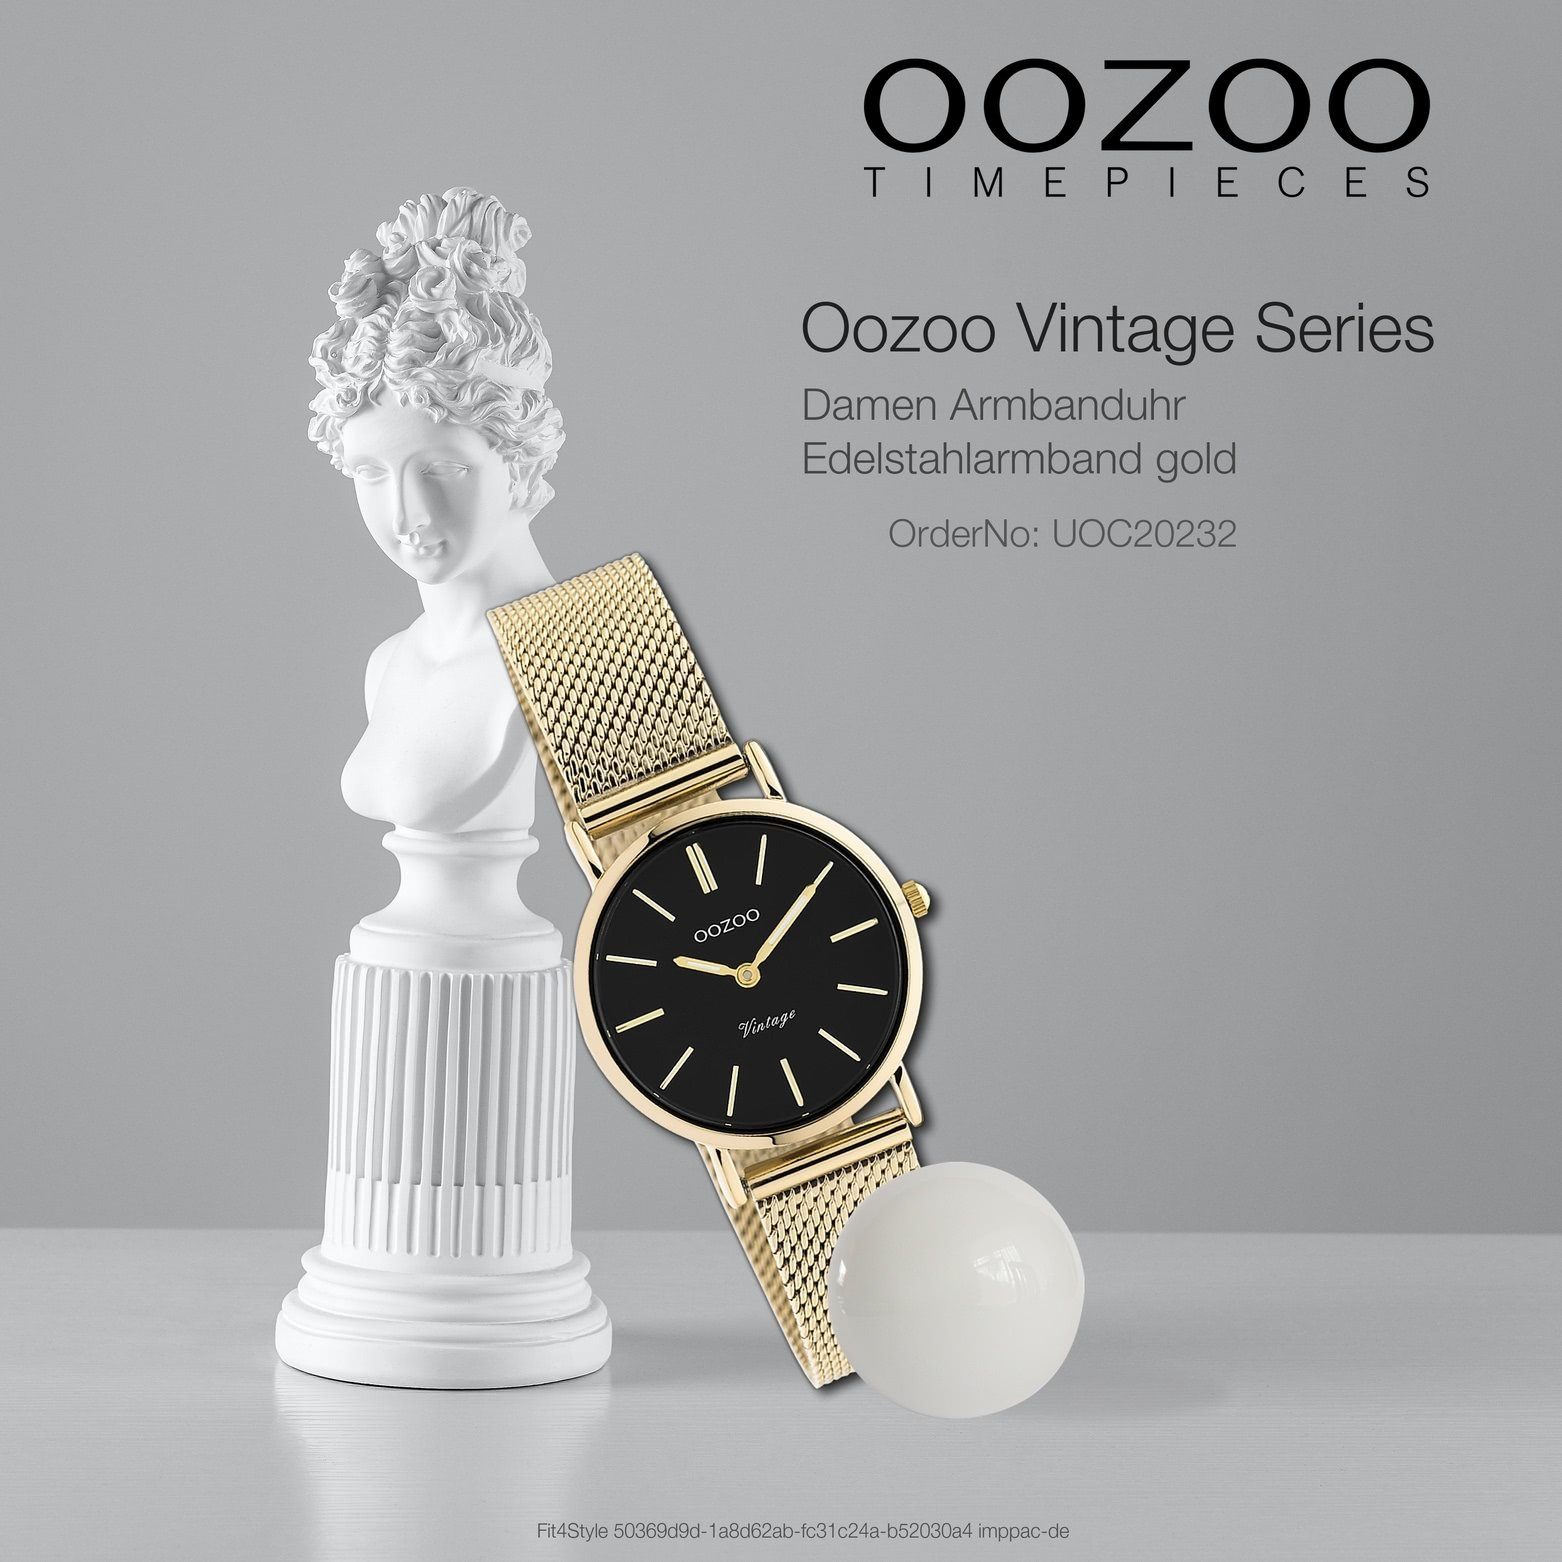 Herren Uhren OOZOO Quarzuhr UOC20232 Oozoo Unisex Armbanduhr gold Analog, Damen, Herrenuhr rund, klein (ca. 28mm), Edelstahlarmb